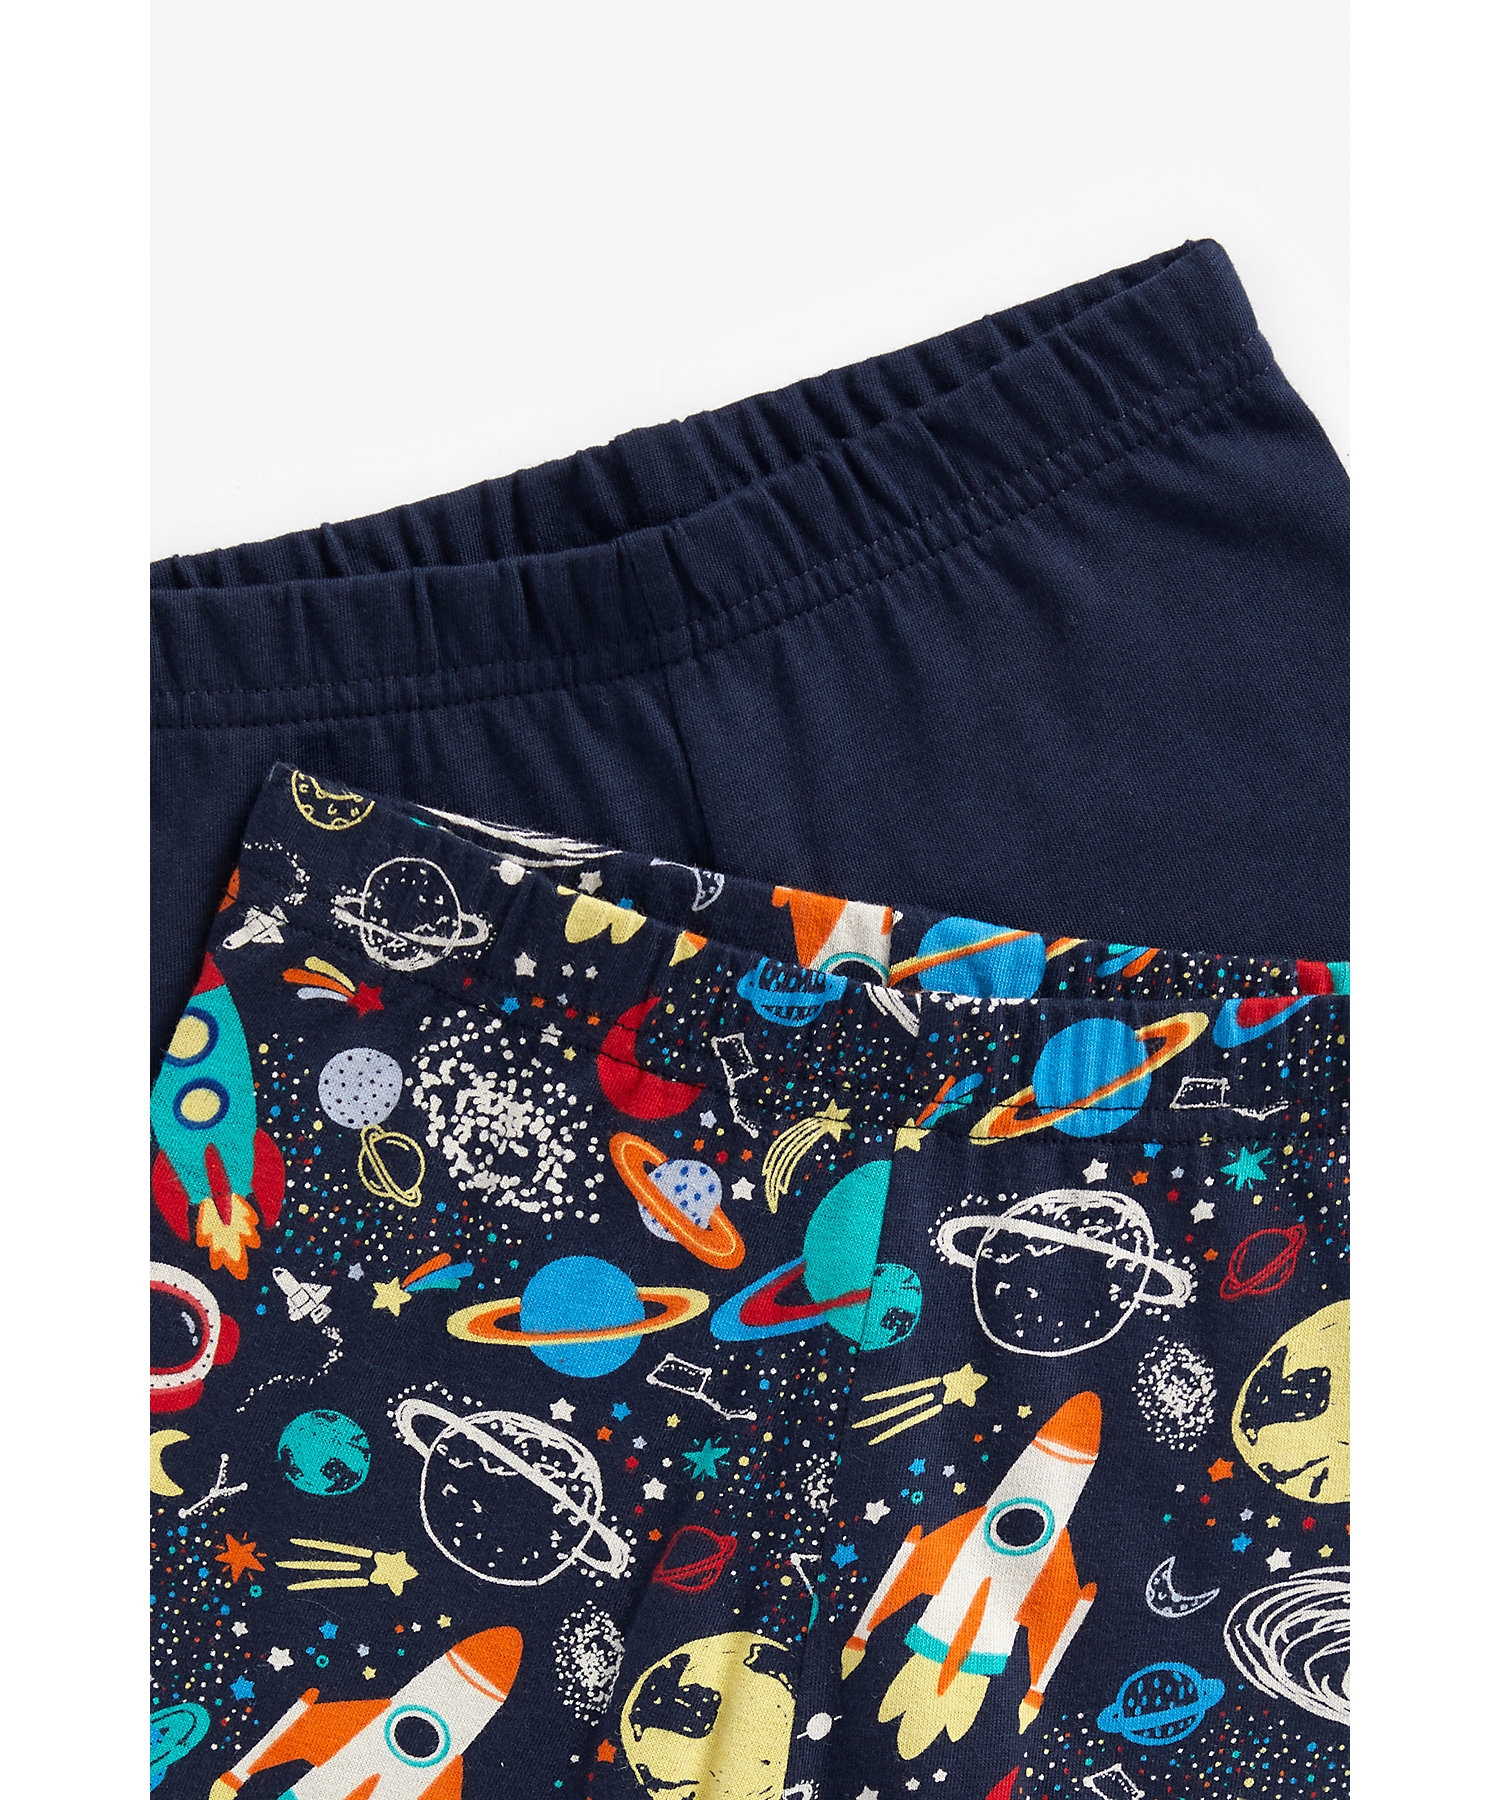 Boys Full Sleeves Pyjama Set Space Print-Pack of 2-Multicolor